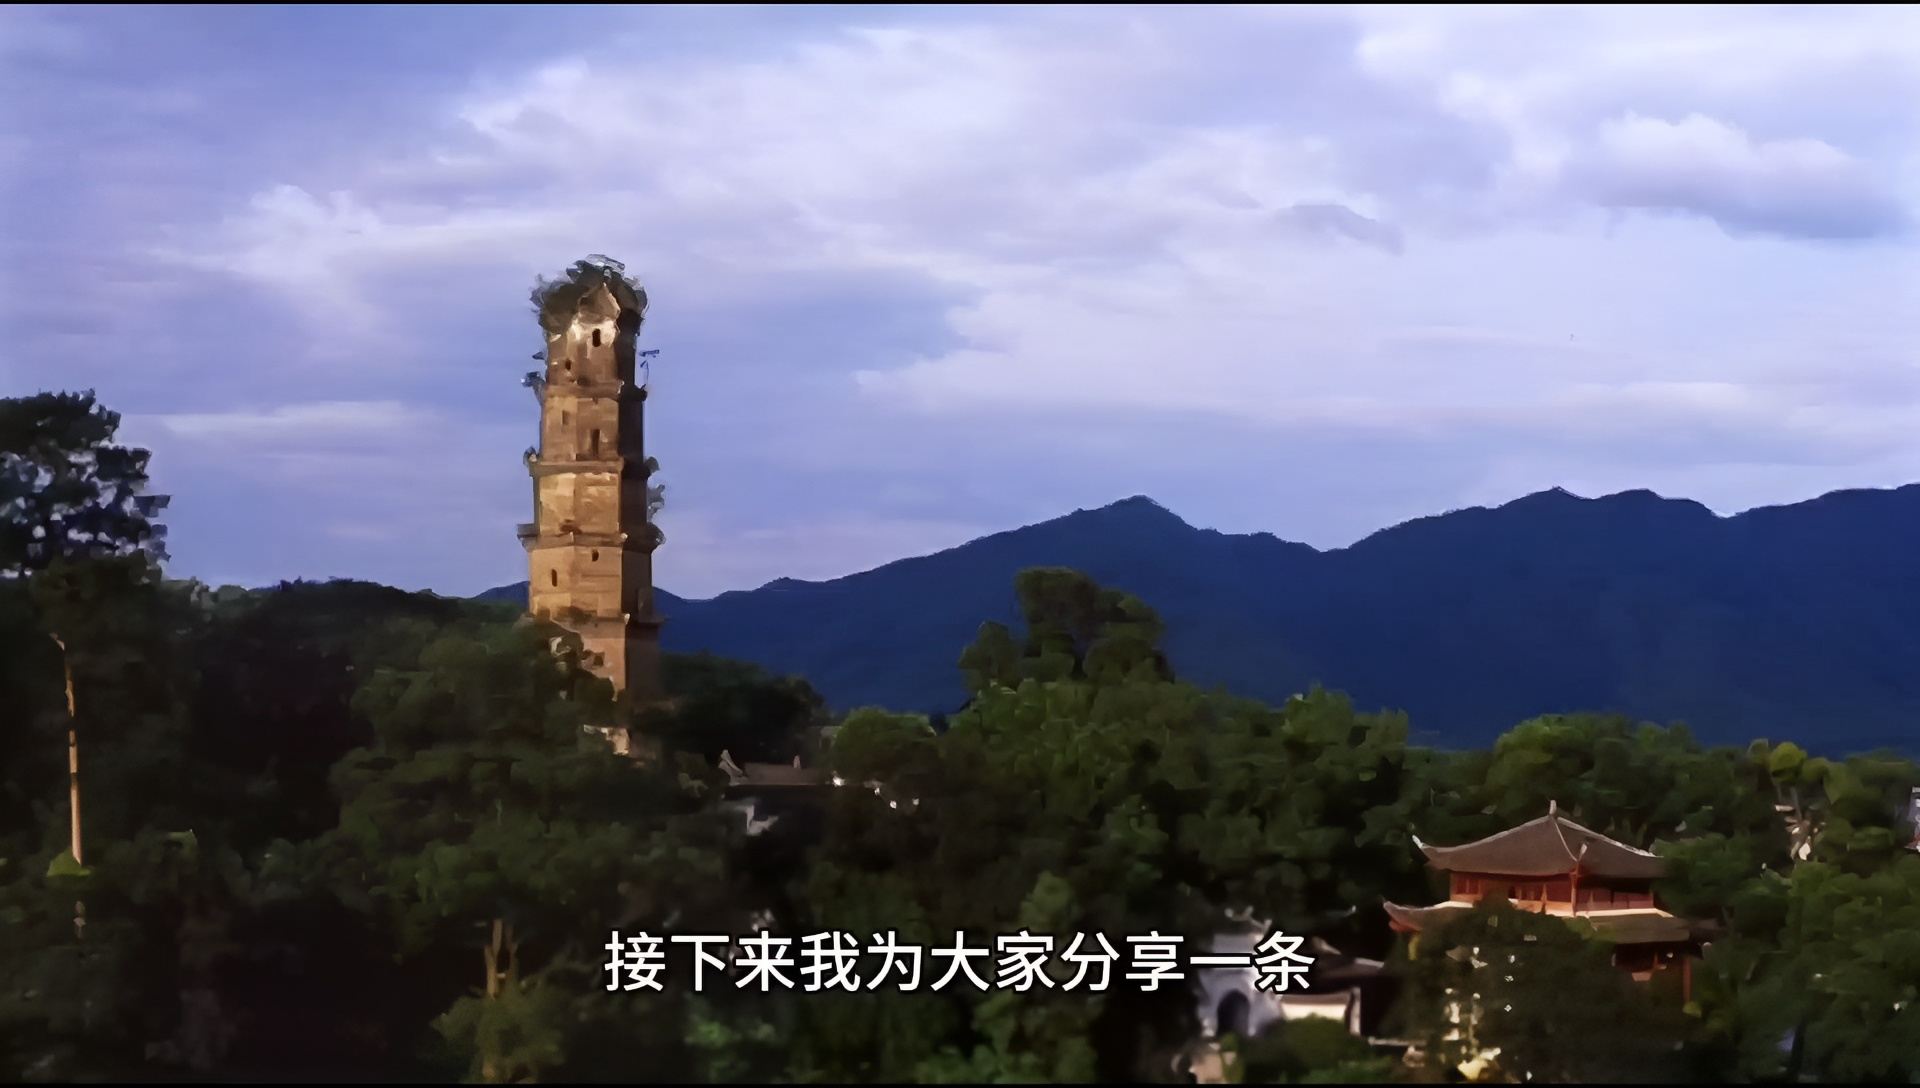 接下来我为大家分享一条湖南省永州市蓝山县的旅游攻略。